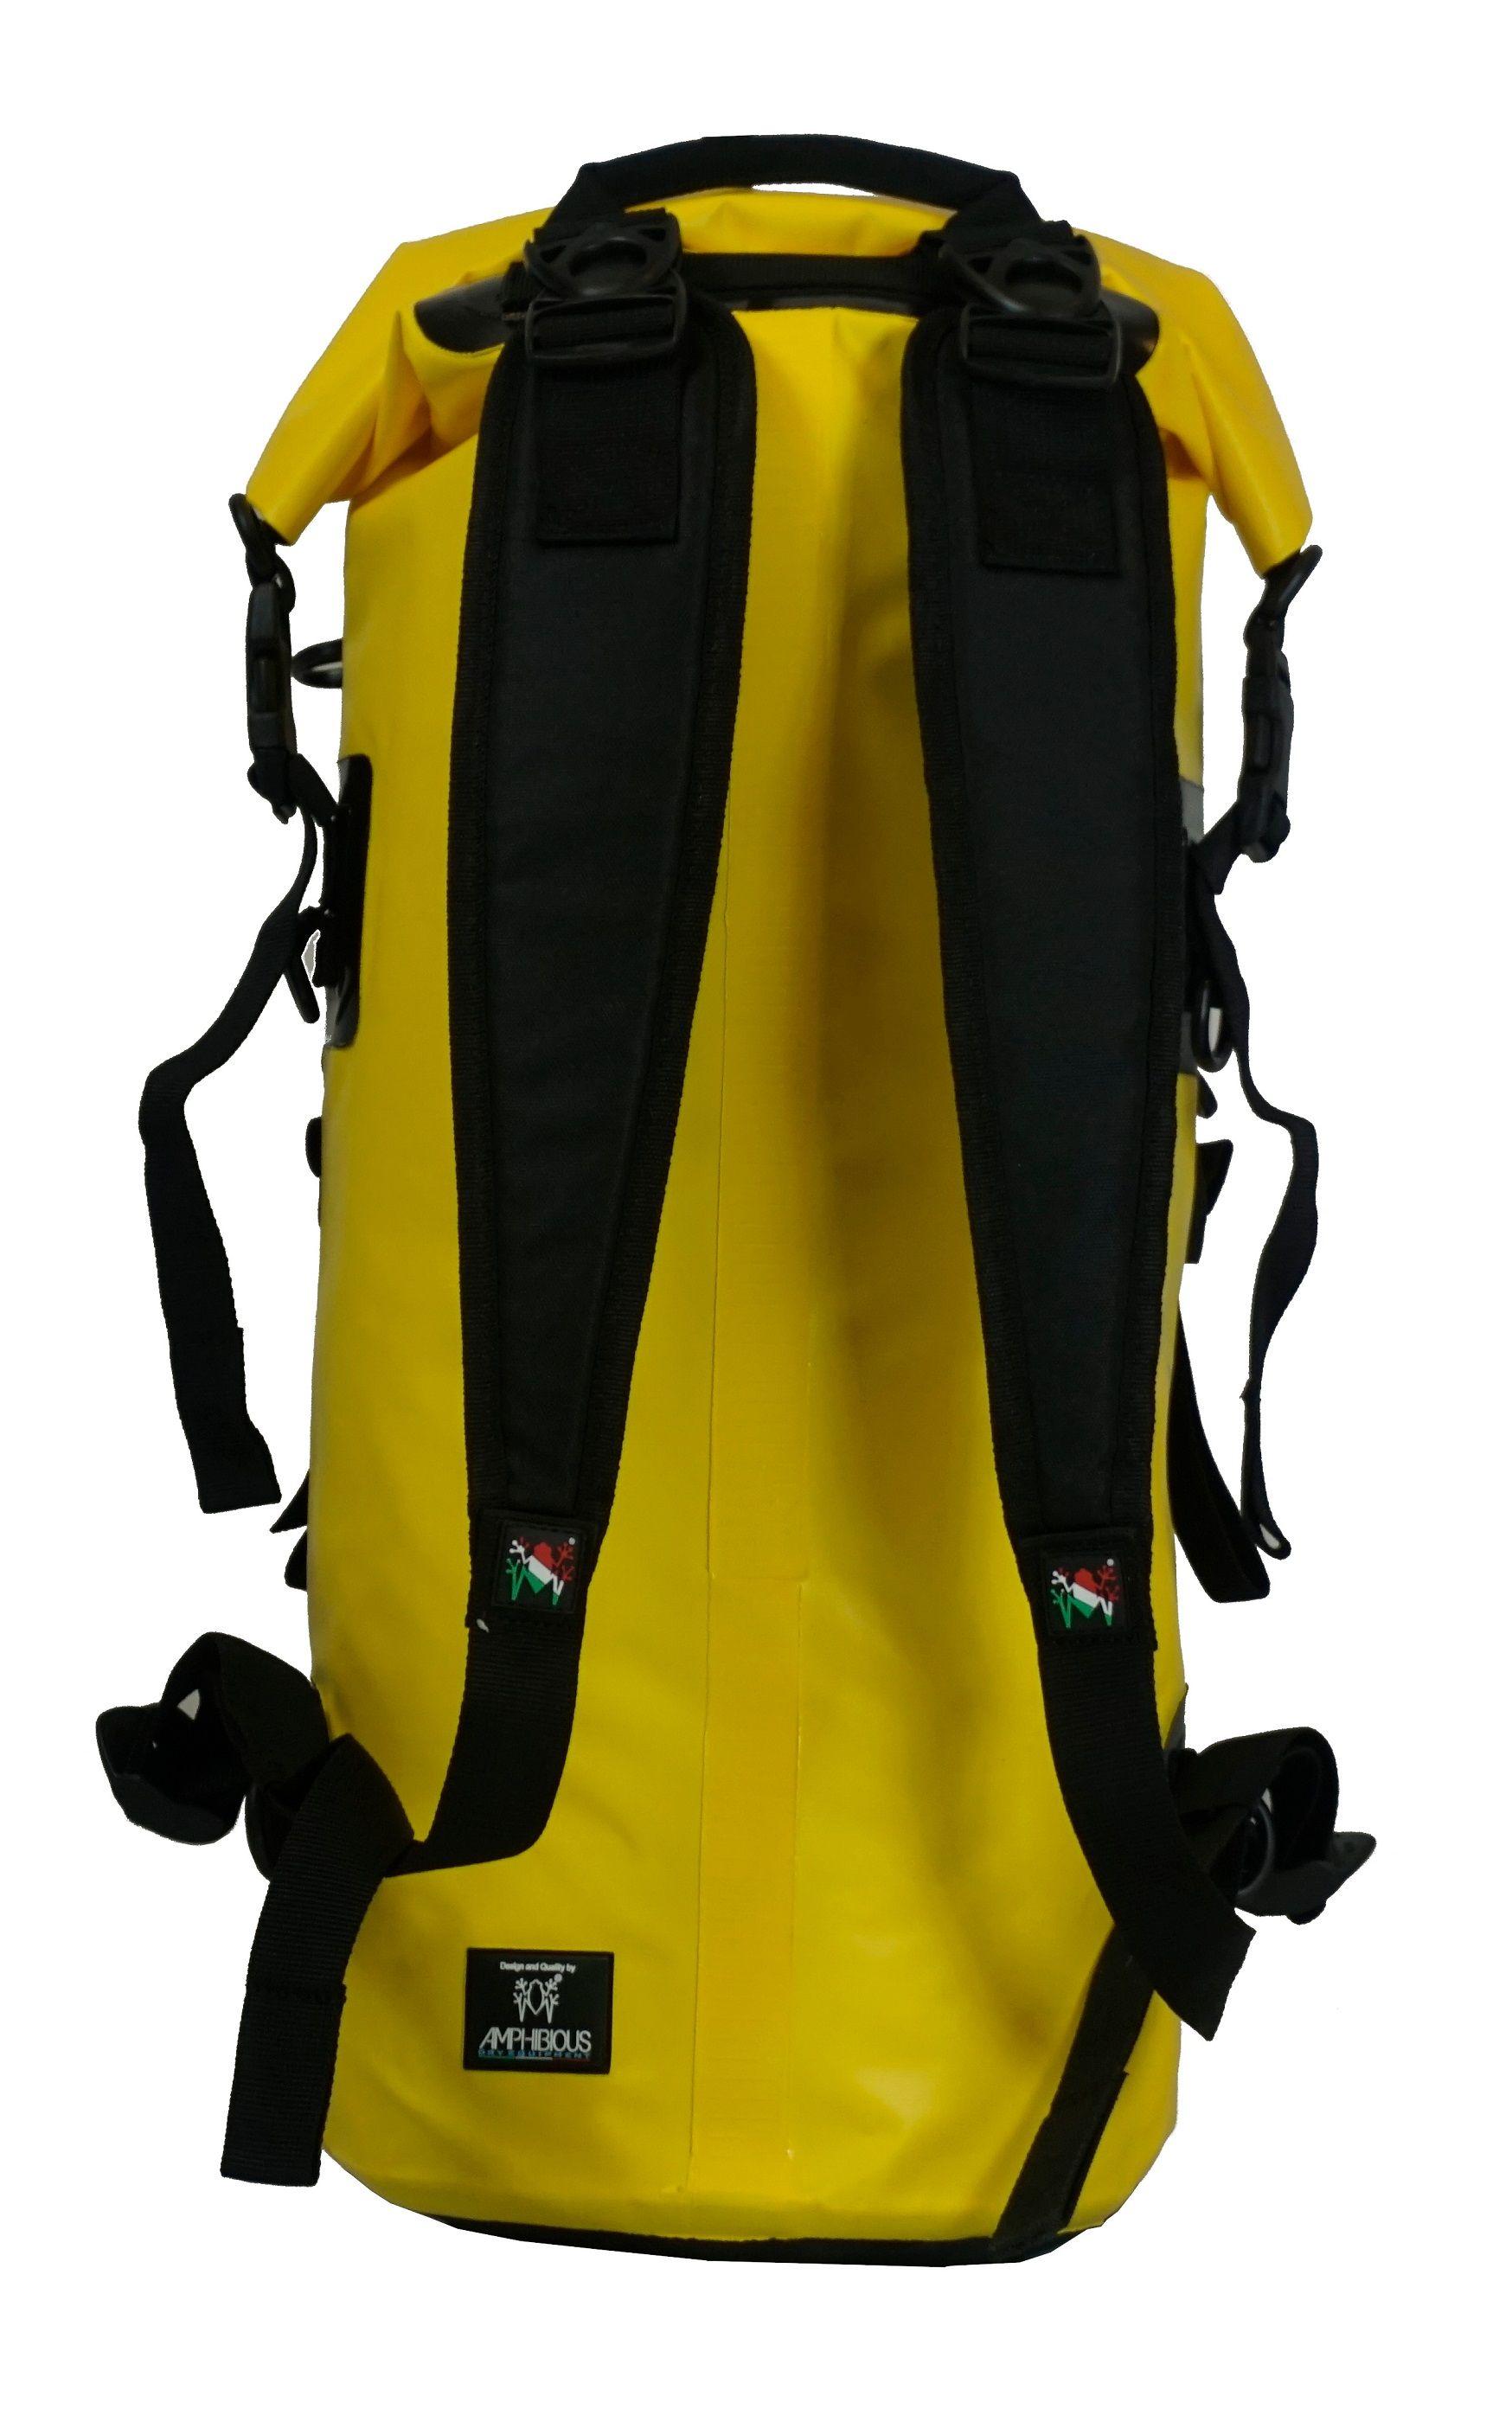 Plecak Amphibious Quota Wodoszczelny 30l Żółty Zsa-2030.04